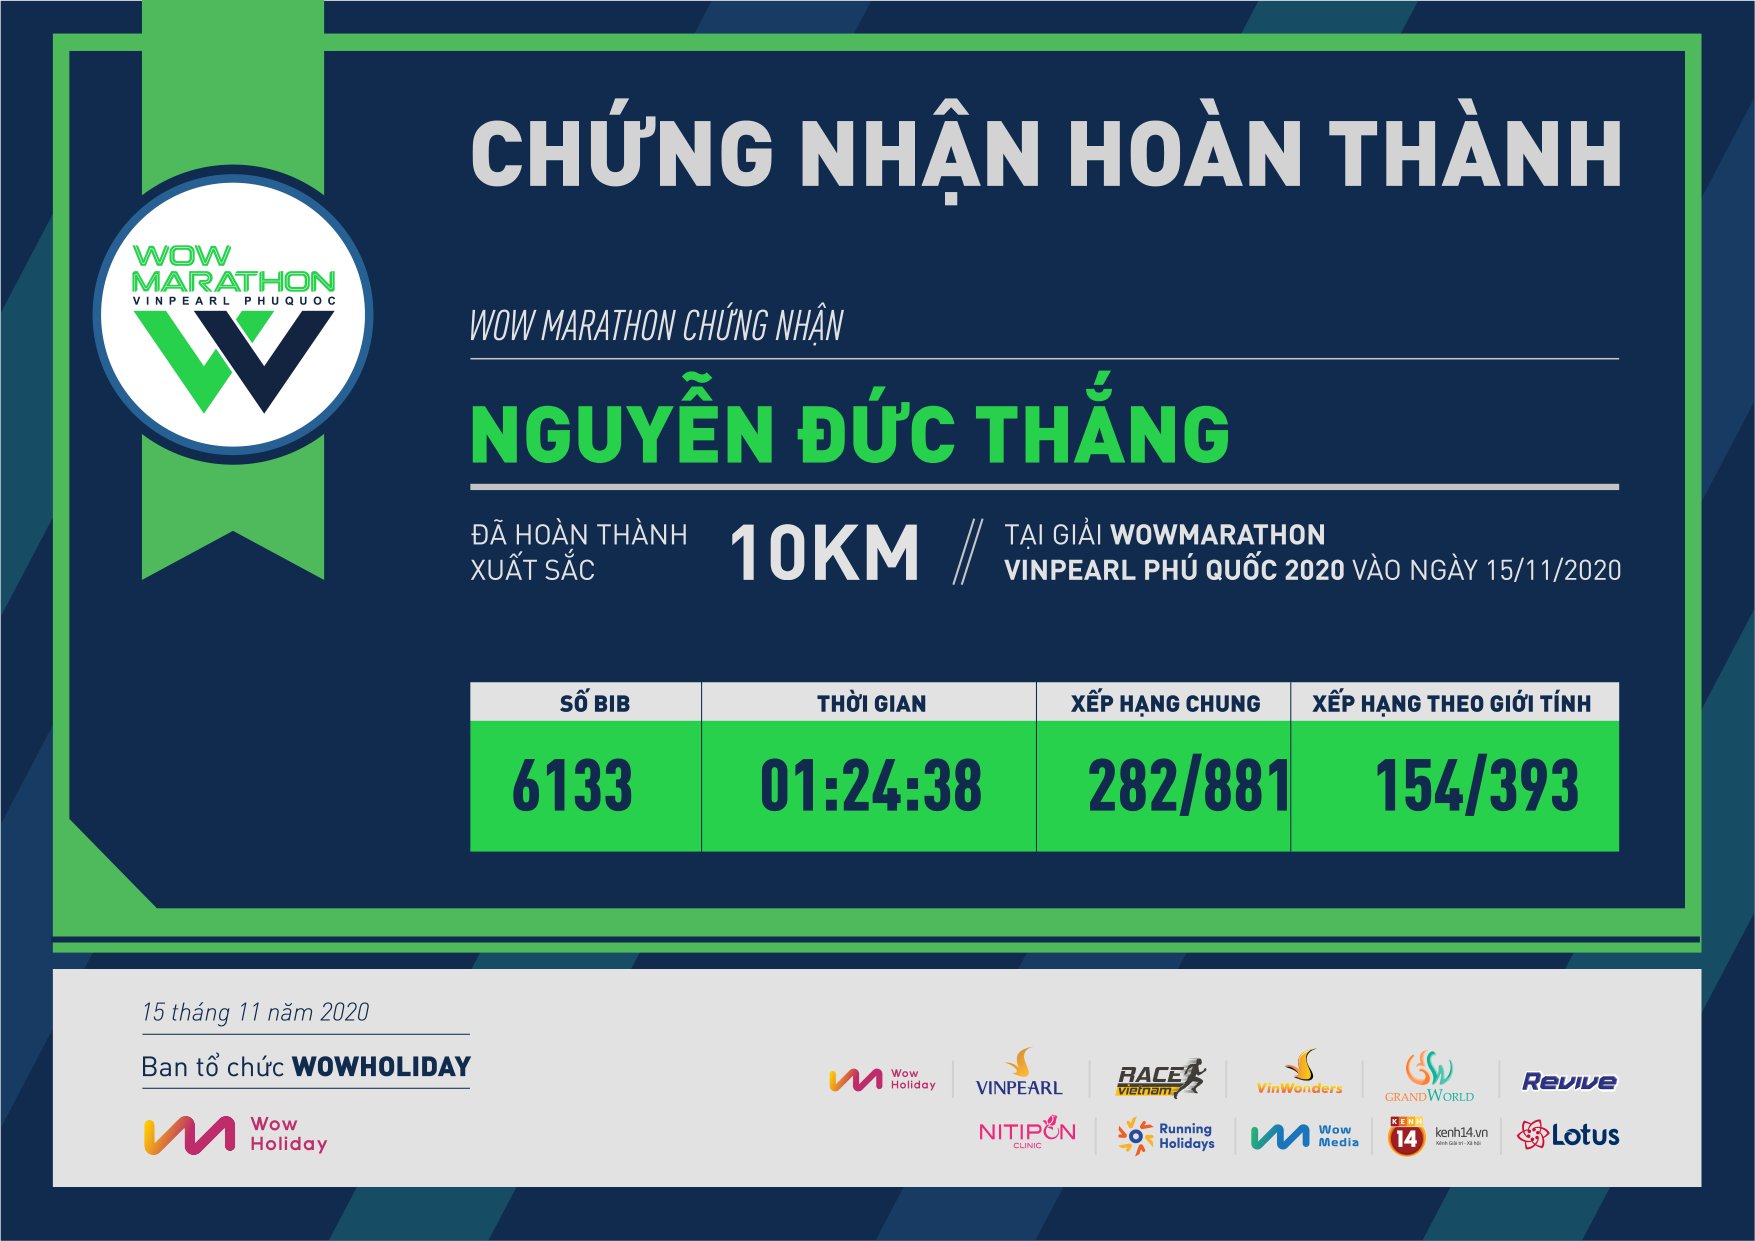 6133 - Nguyễn Đức Thắng